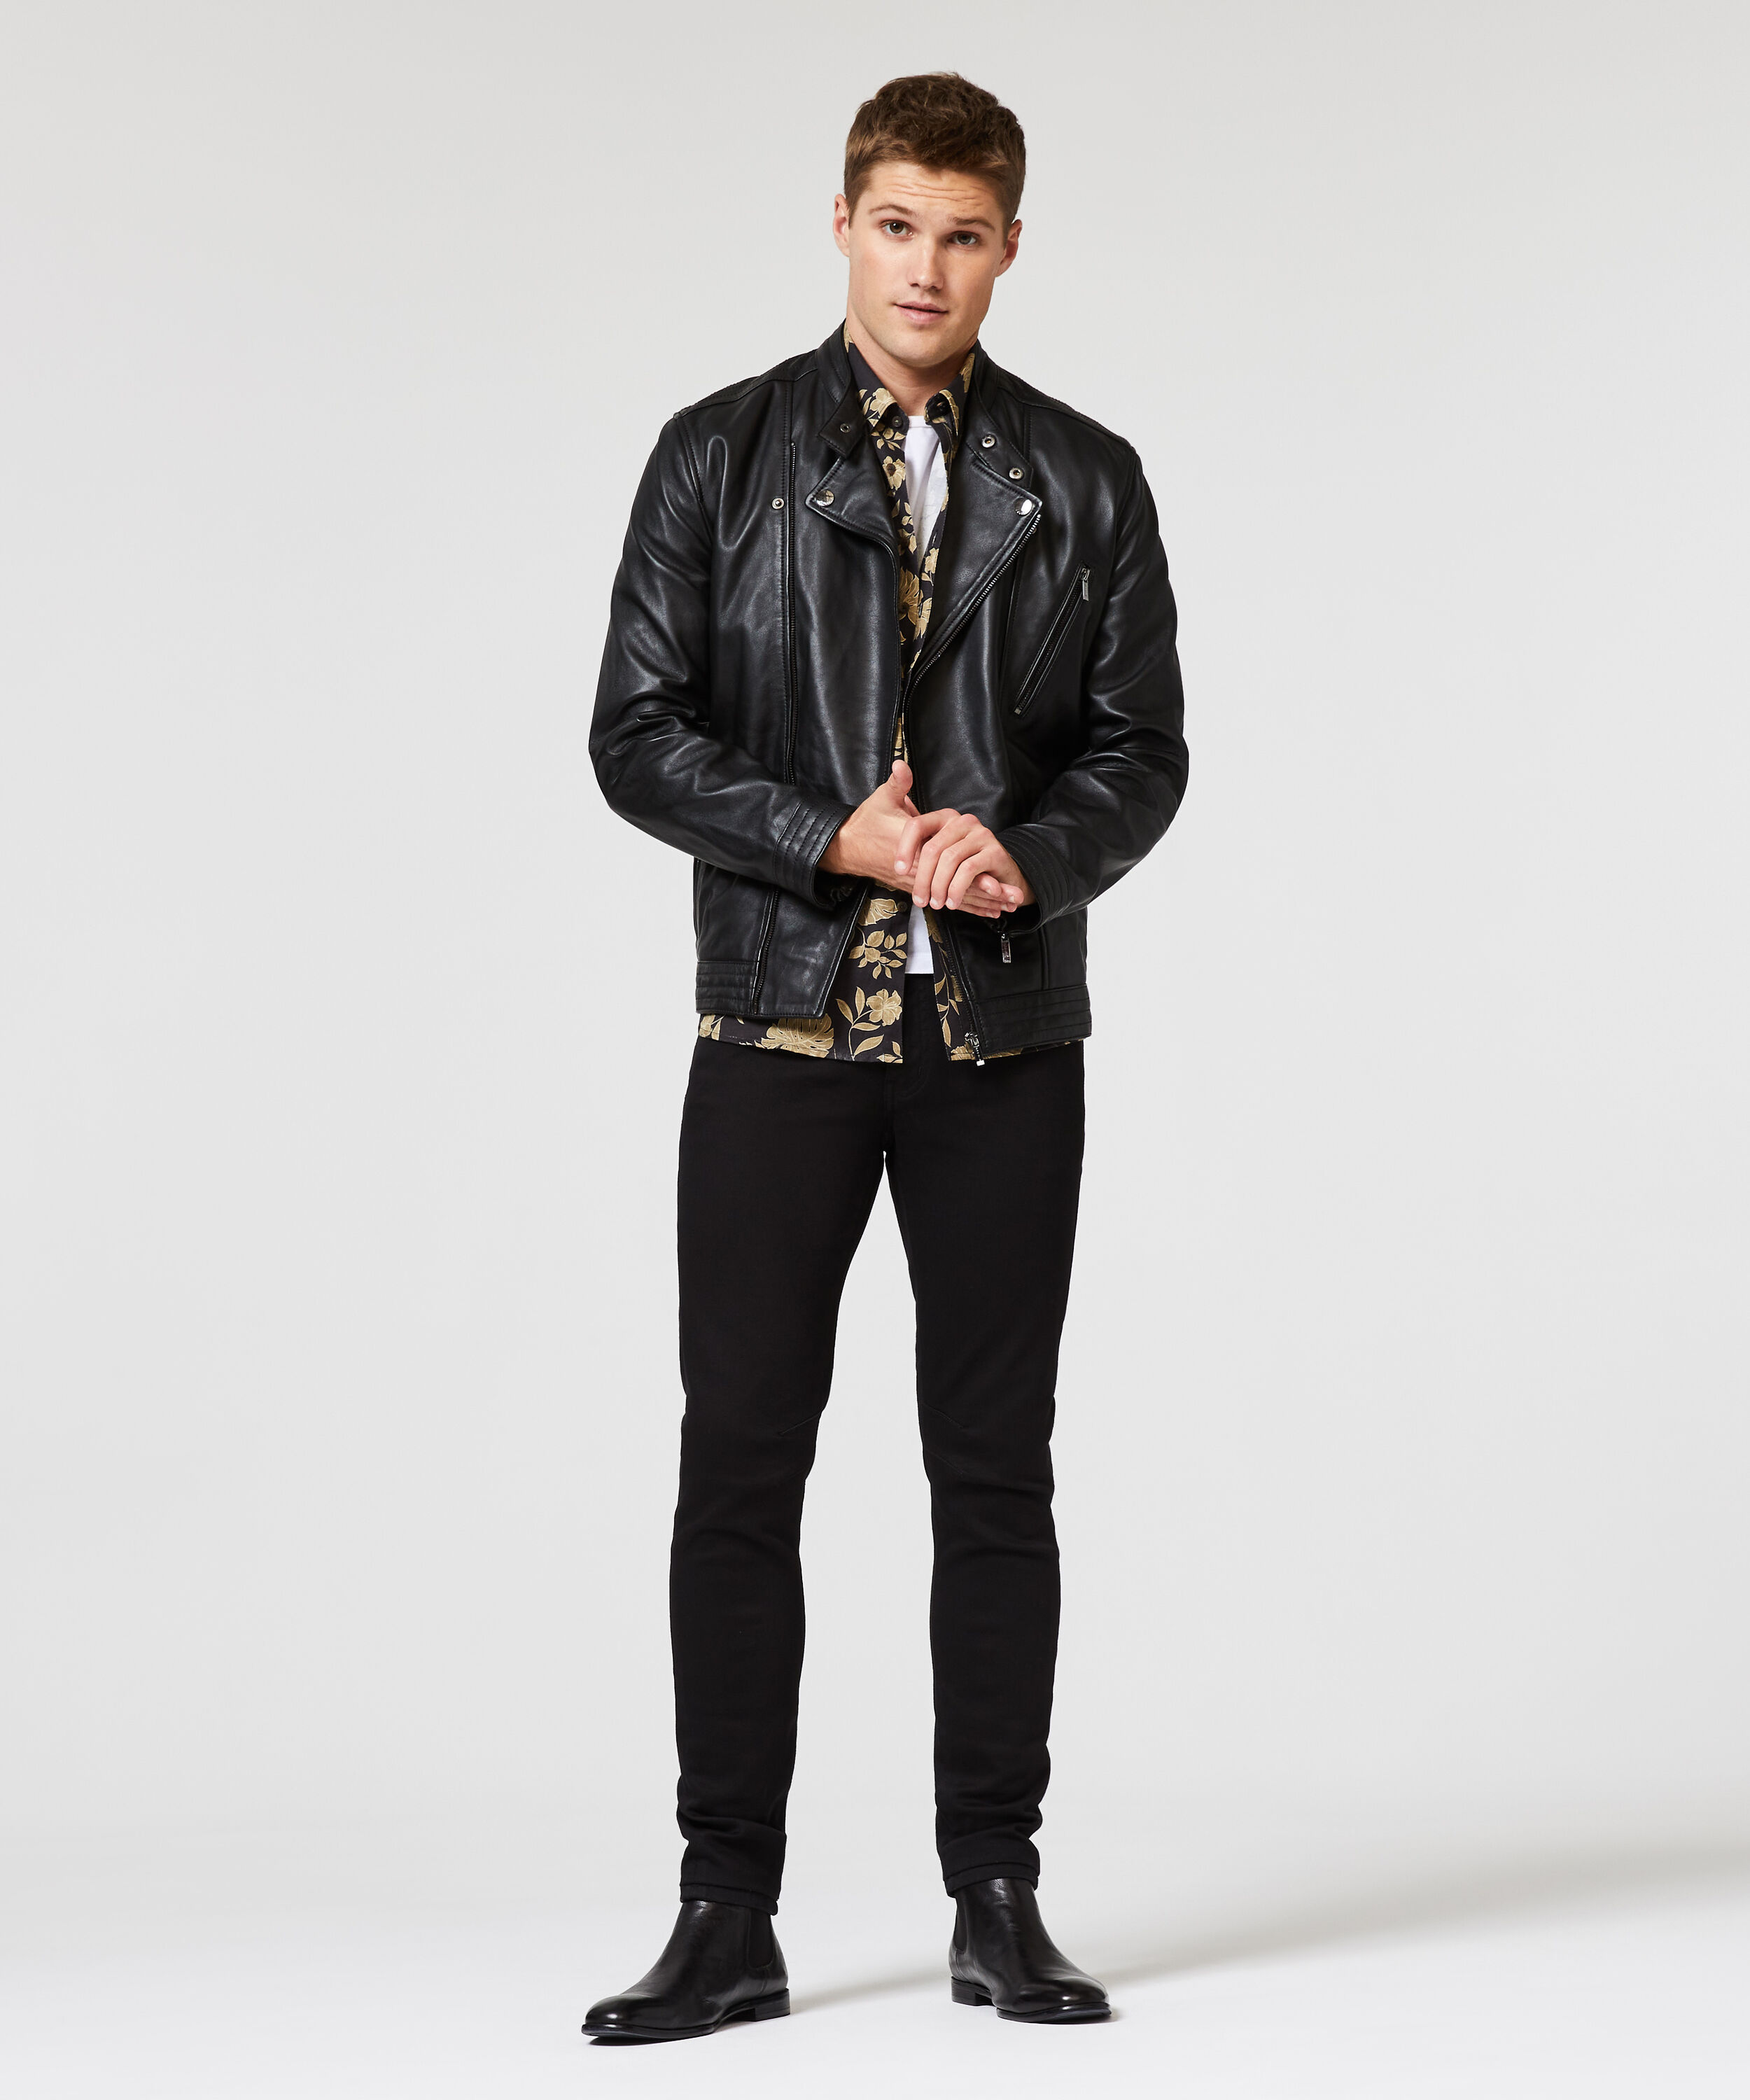 Altona Leather Jacket - Black | Leather Jackets | Politix